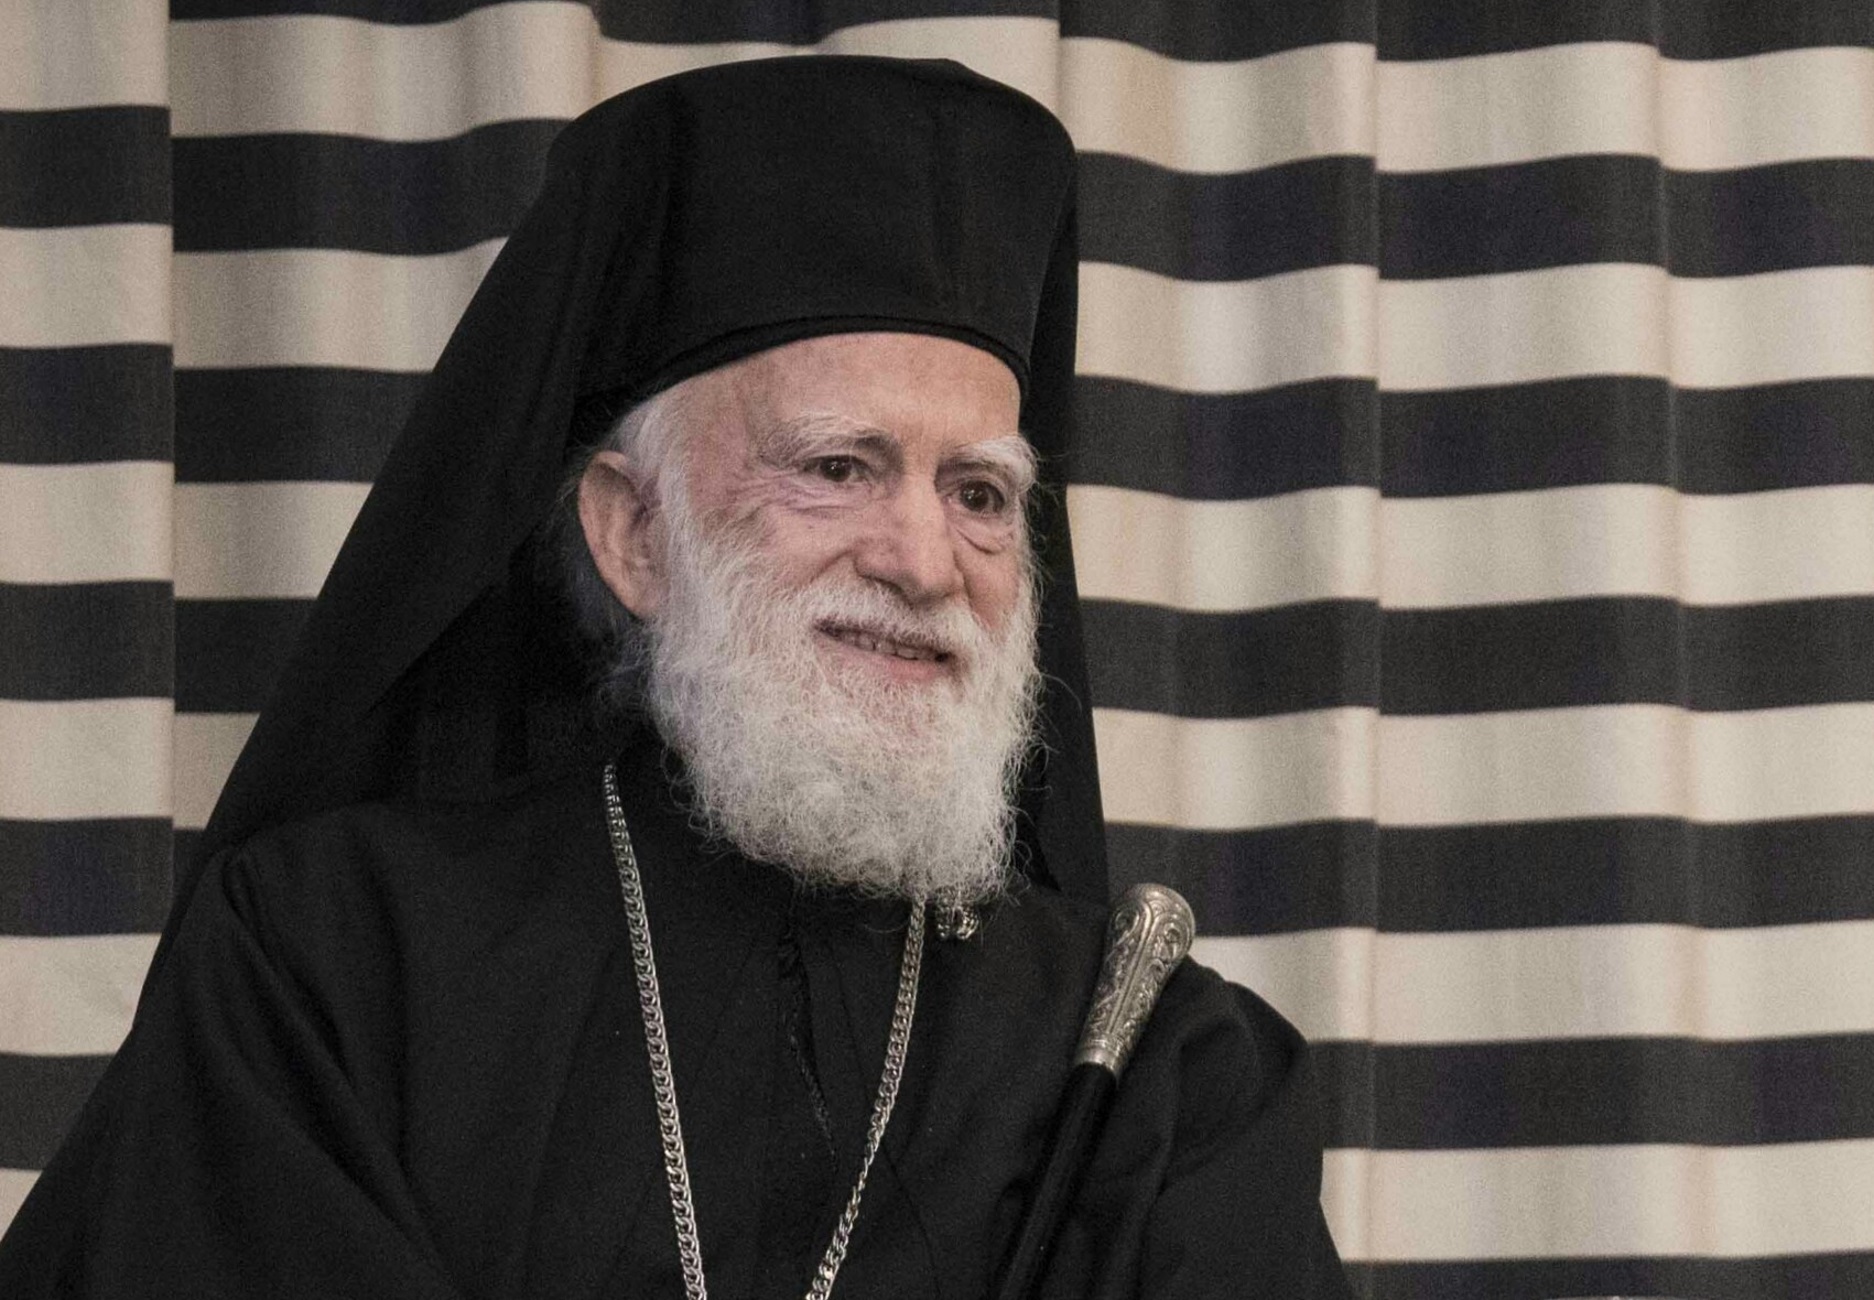 Ηράκλειο: Σε καταστολή ο Αρχιεπίσκοπος Κρήτης Ειρηναίος! Αγωνία για την πιο κρίσιμη μέρα